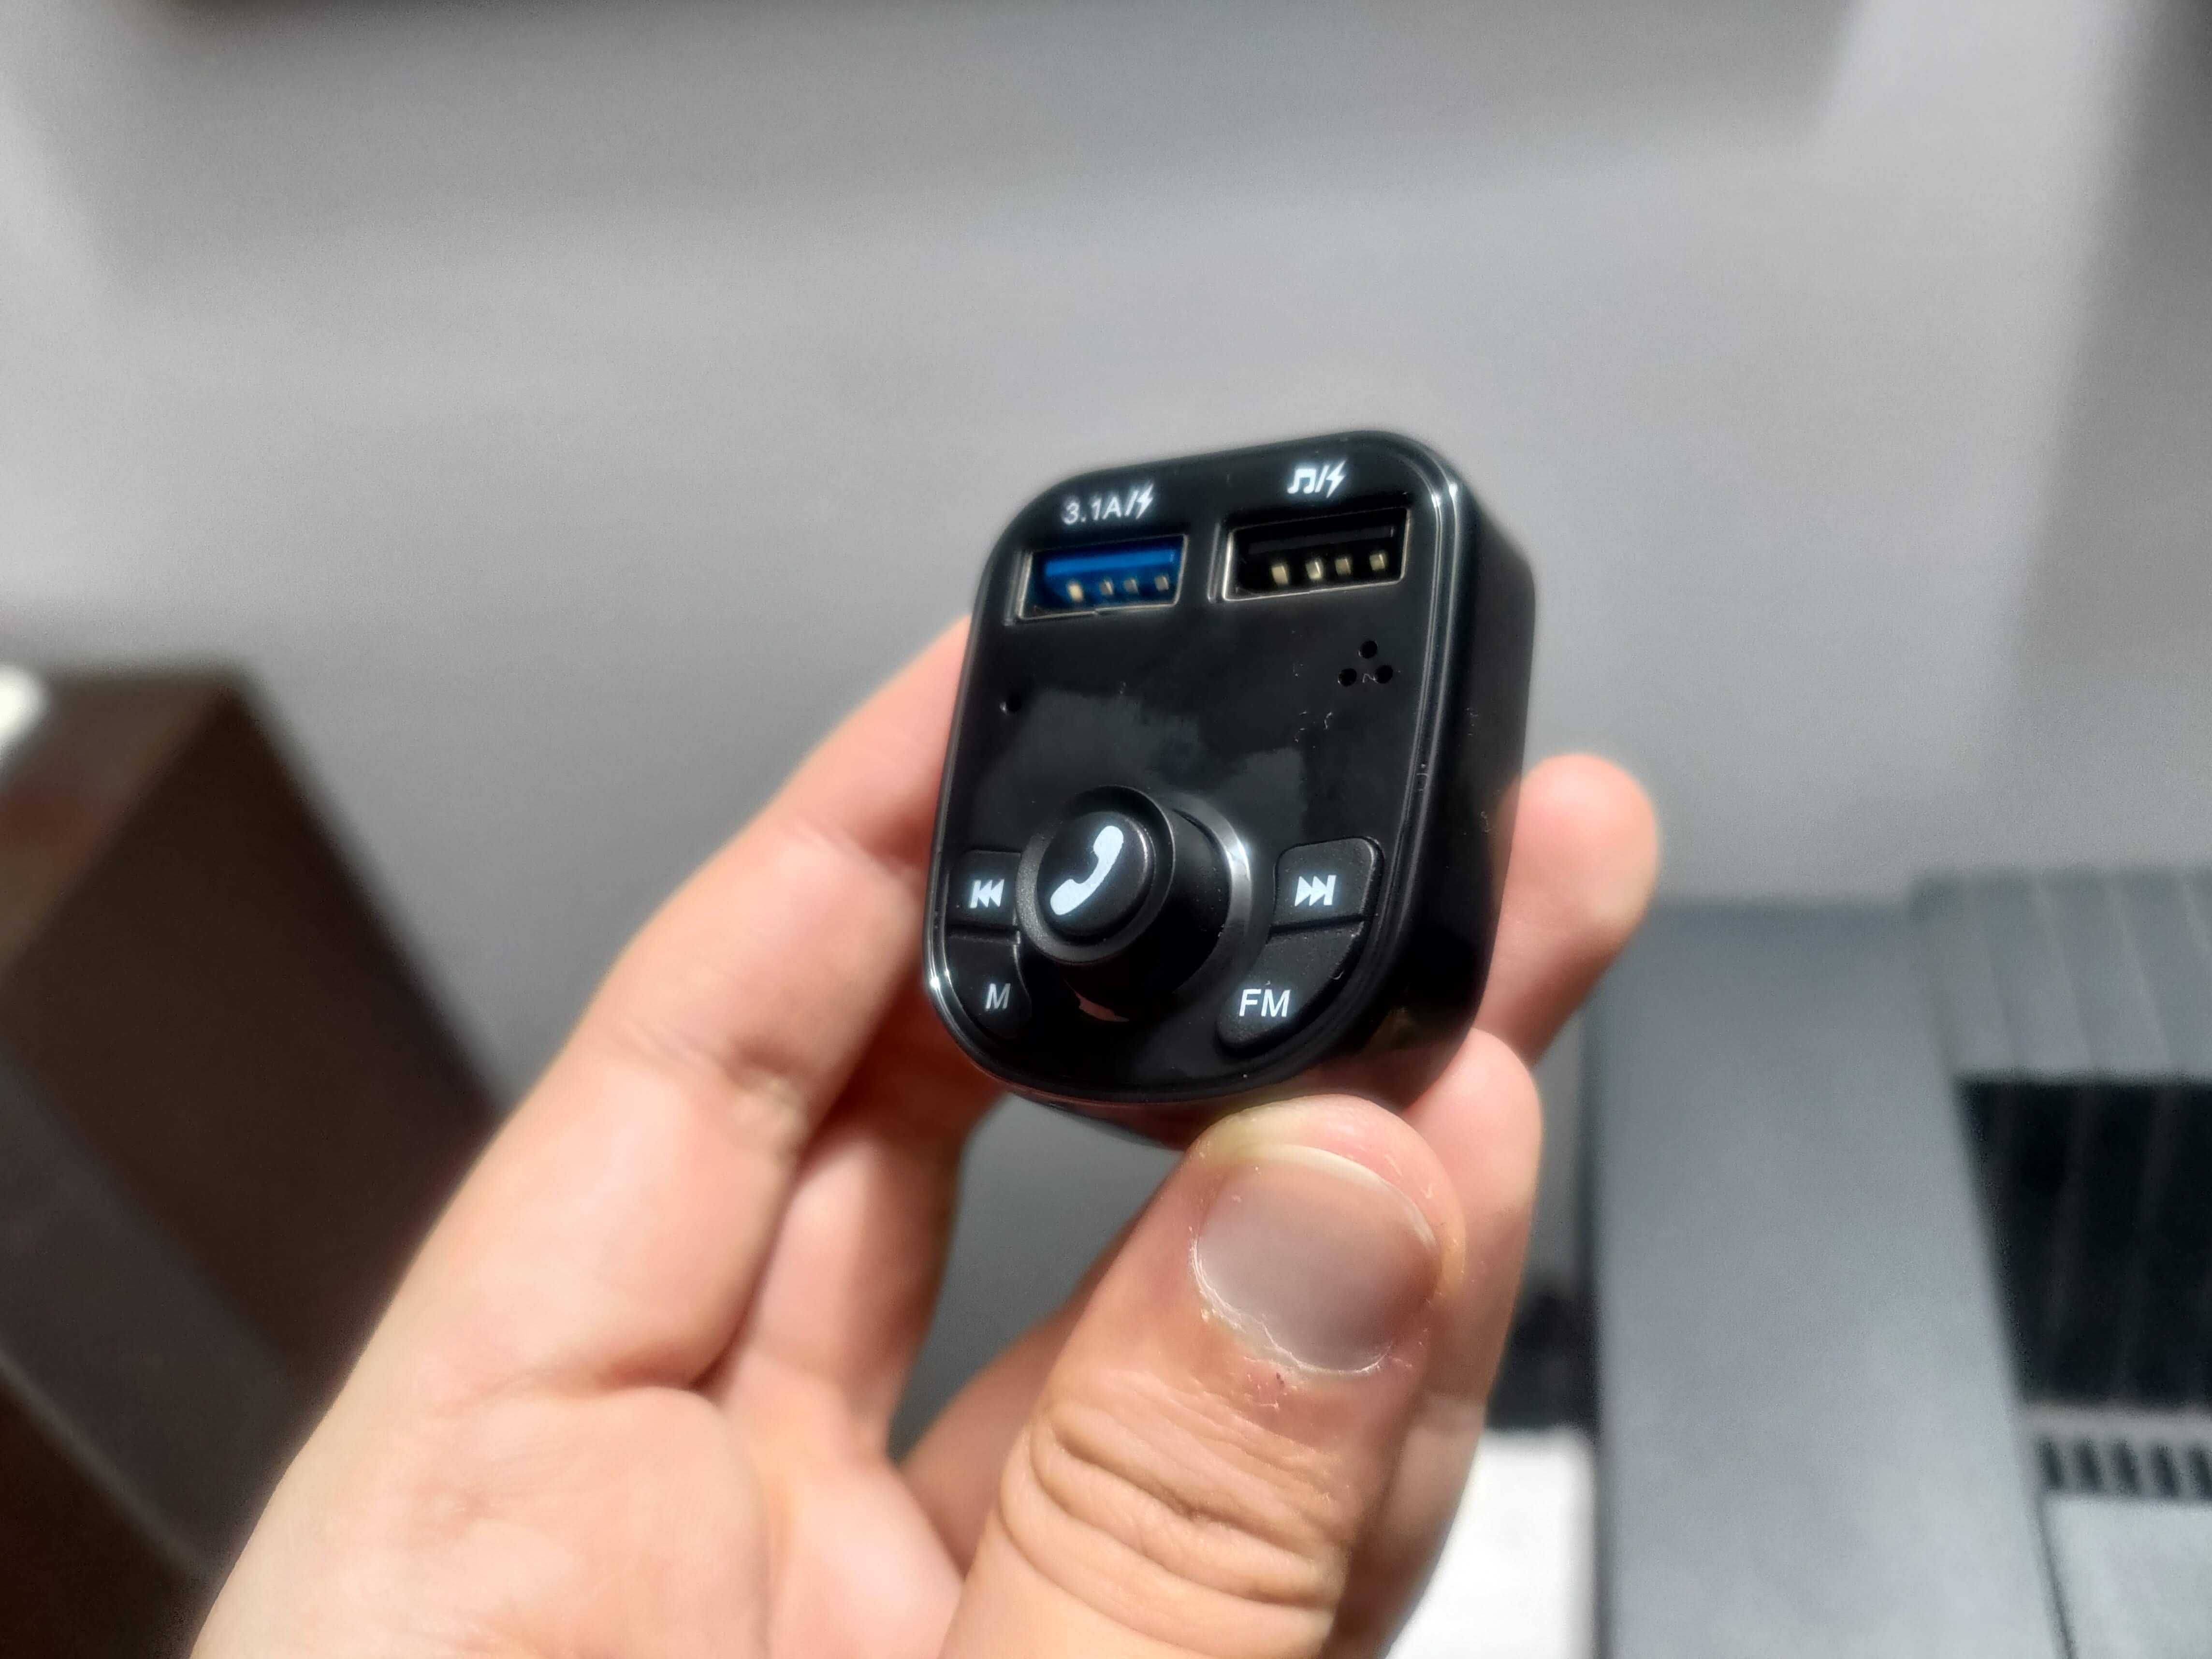 CAR Transmissor FM - Bluetooth 5.0, Telefone, Portas USB (Novo)